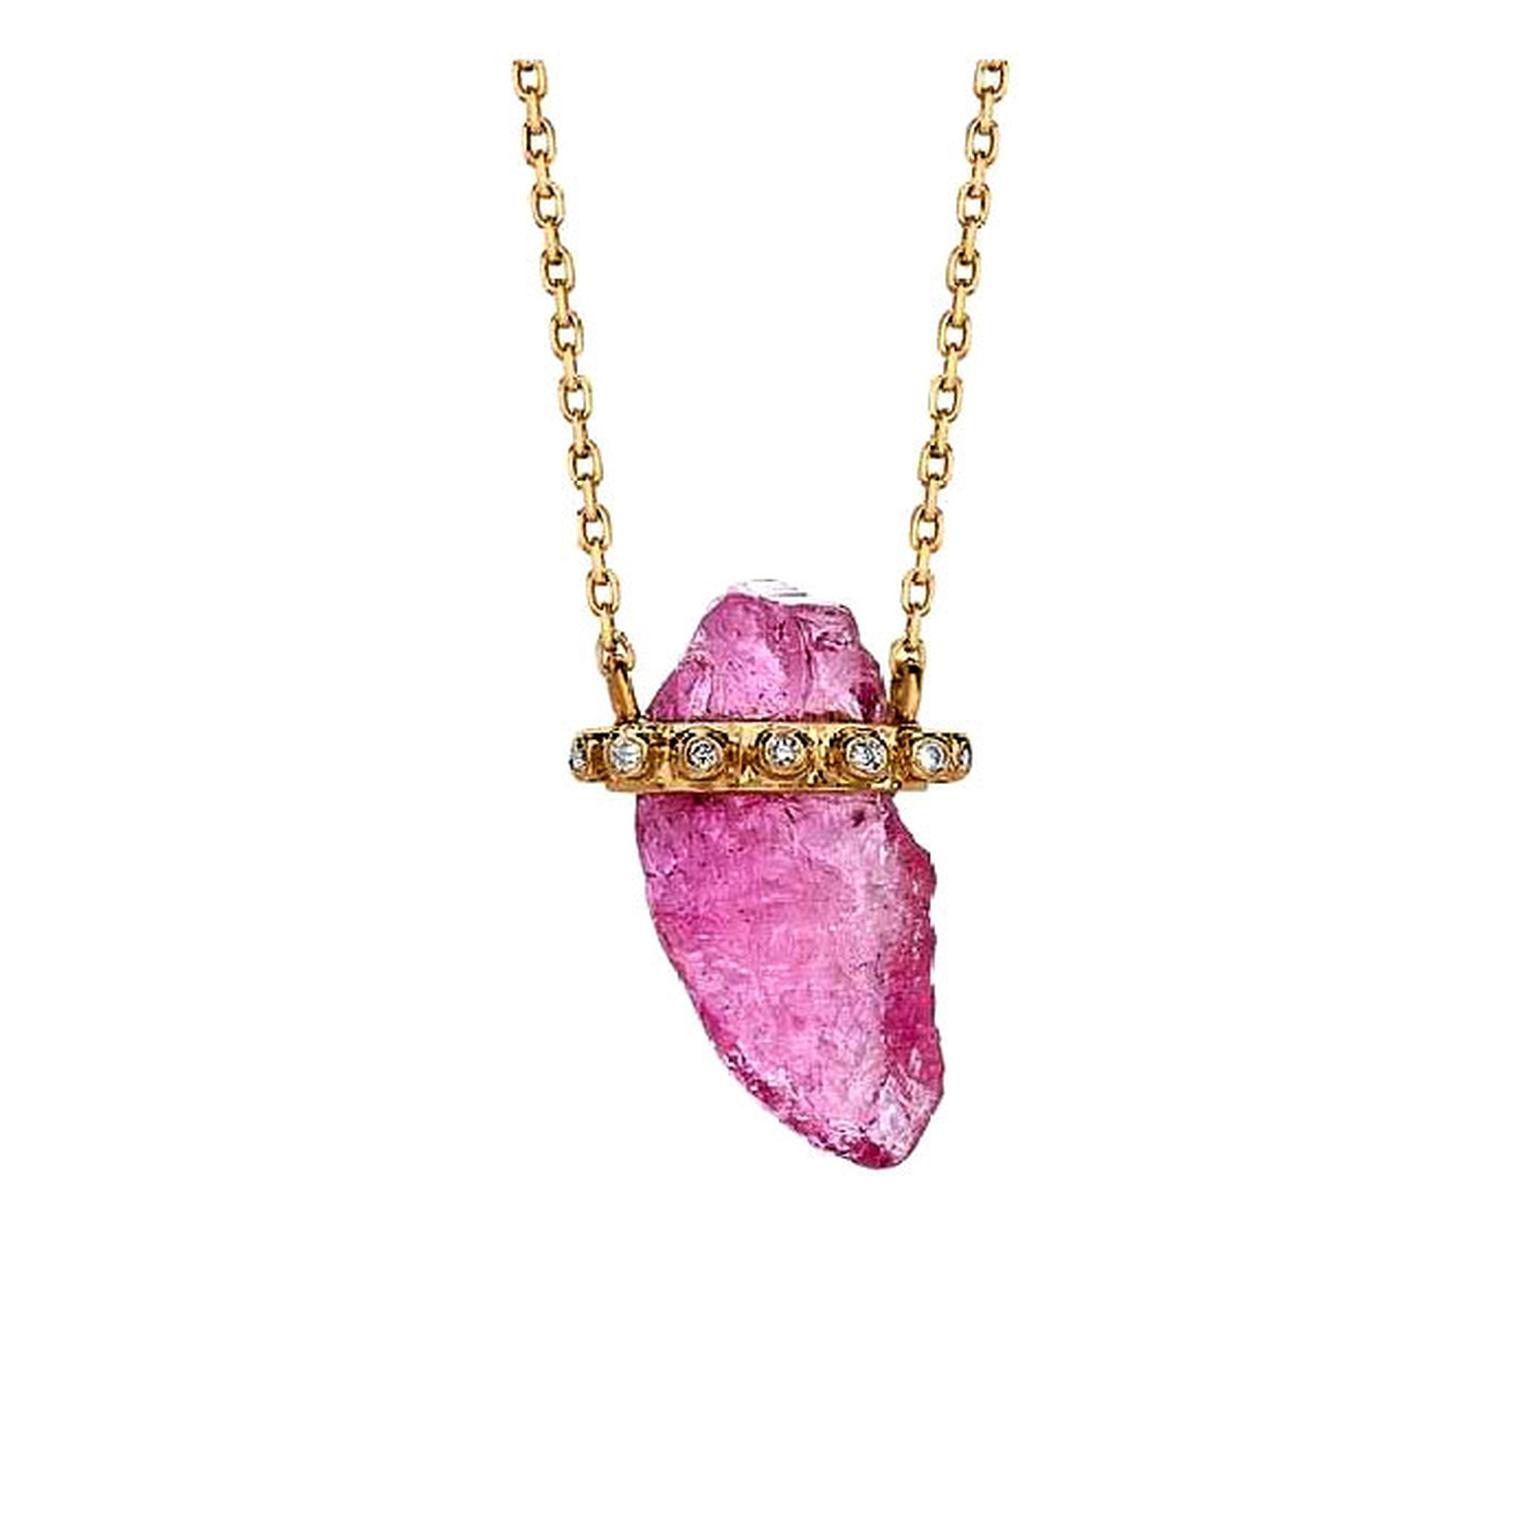 Celine d'Aoust rough pink tourmaline necklace